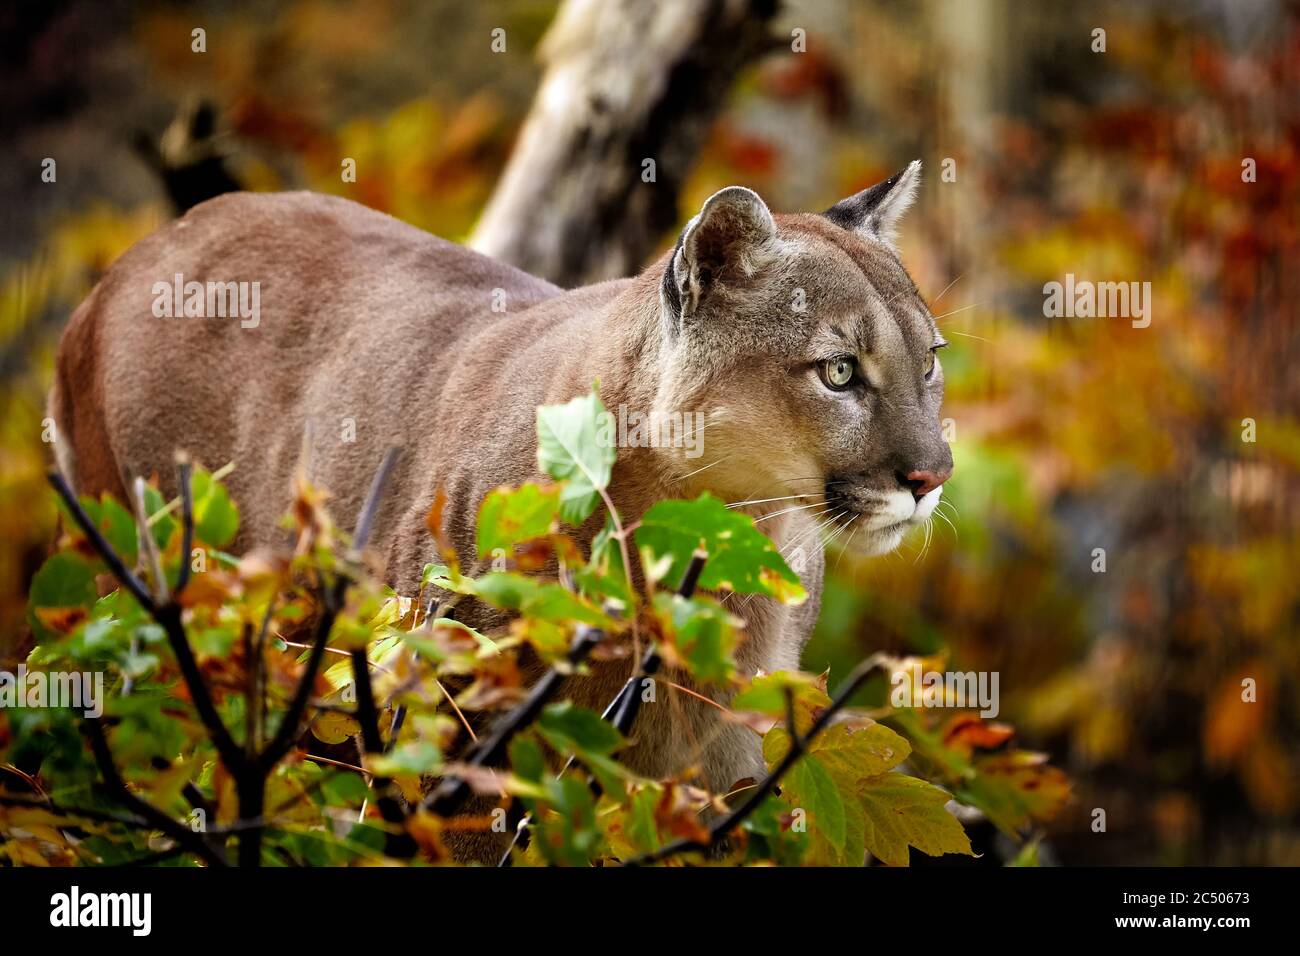 Portrait de la belle Puma en forêt d'automne. Couguar américain - lion de montagne, pose frappante, scène dans les bois, faune Amérique. Banque D'Images